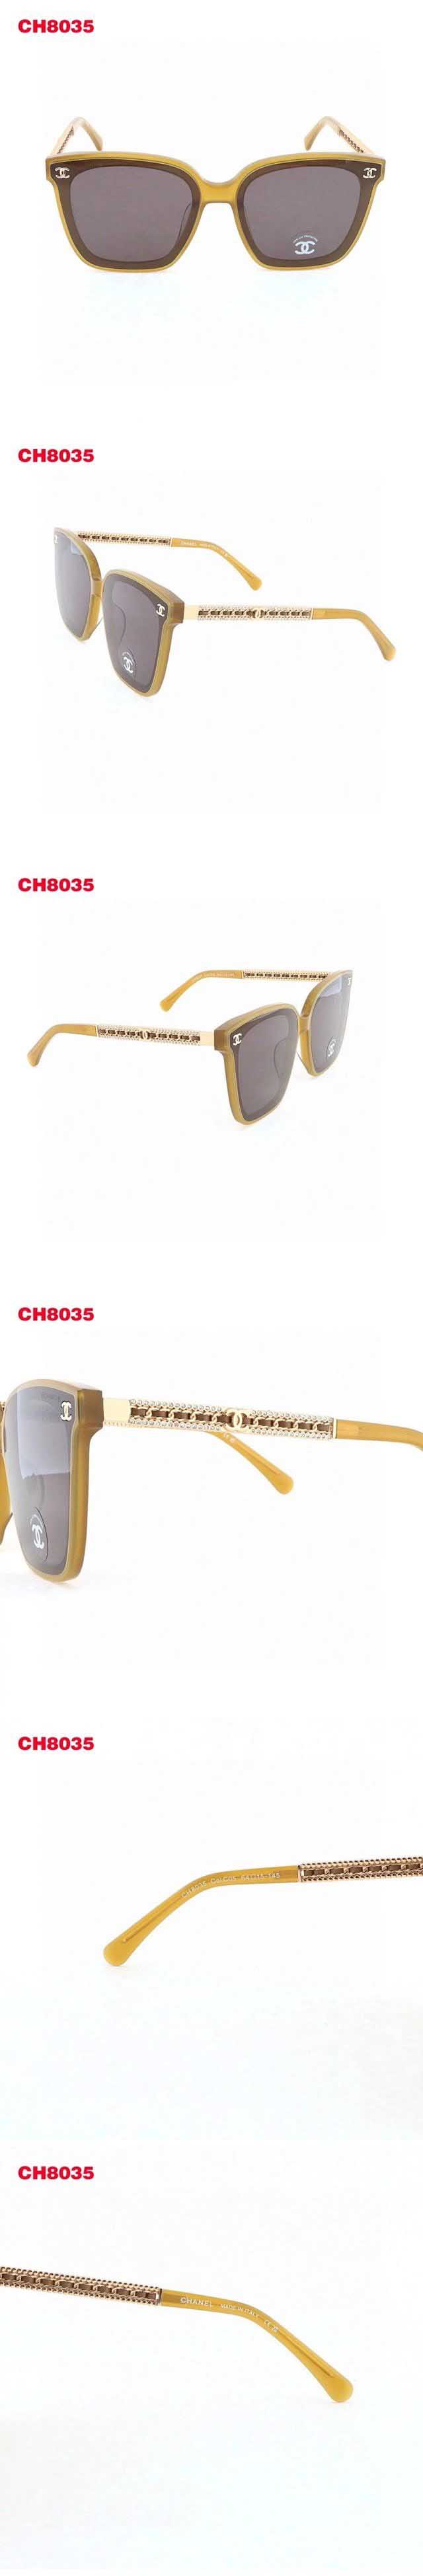 Chanel Light Yellow Sunglasses シャネル ライトイエロー サングラス